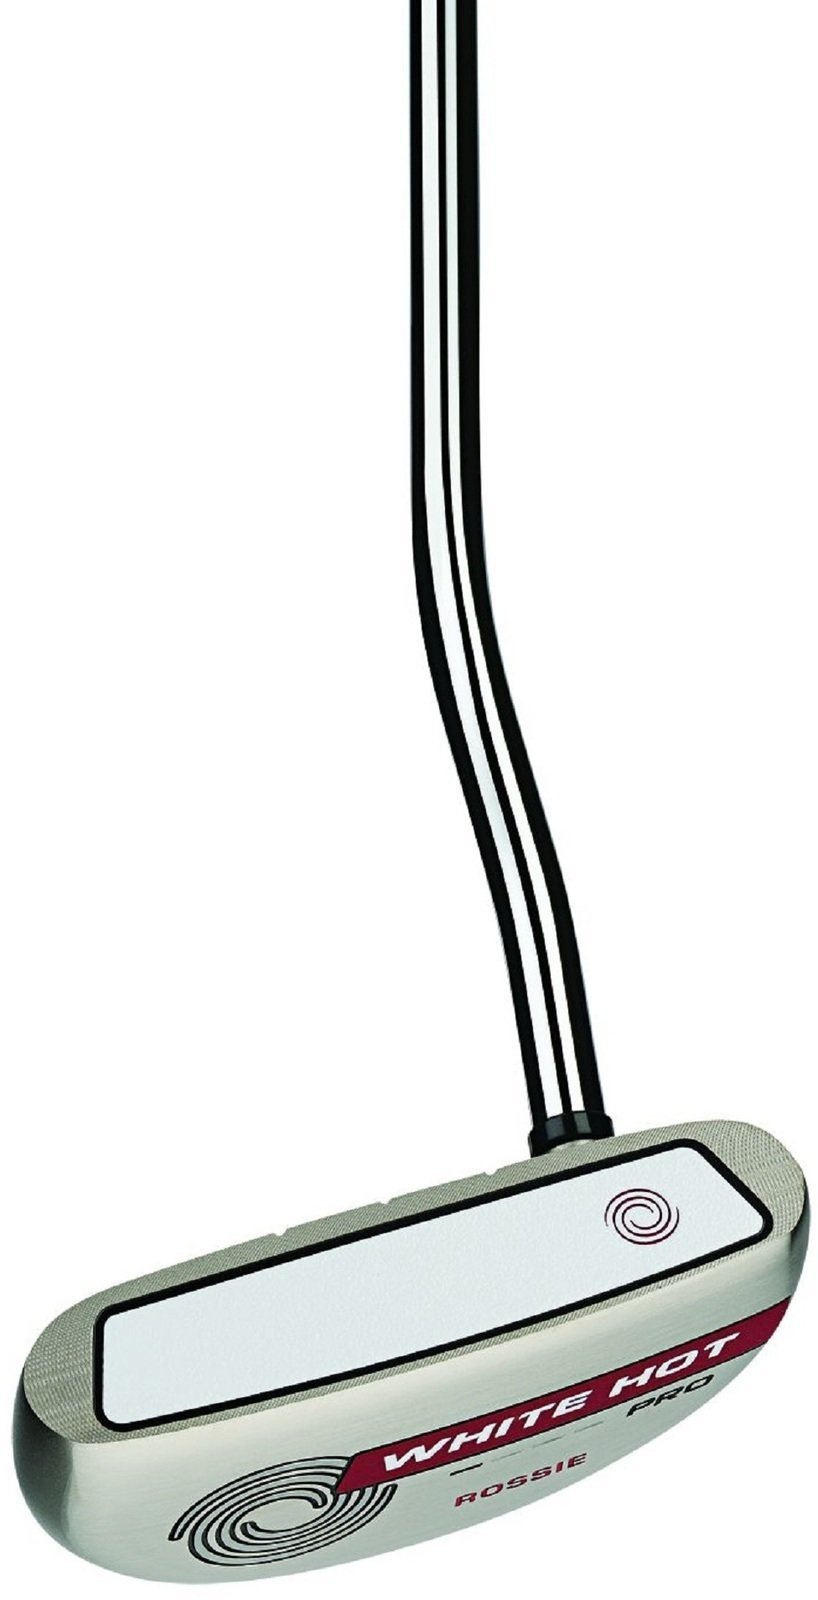 Golfschläger - Putter Odyssey White Hot Pro 2.0 Rossie Rechte Hand 35''